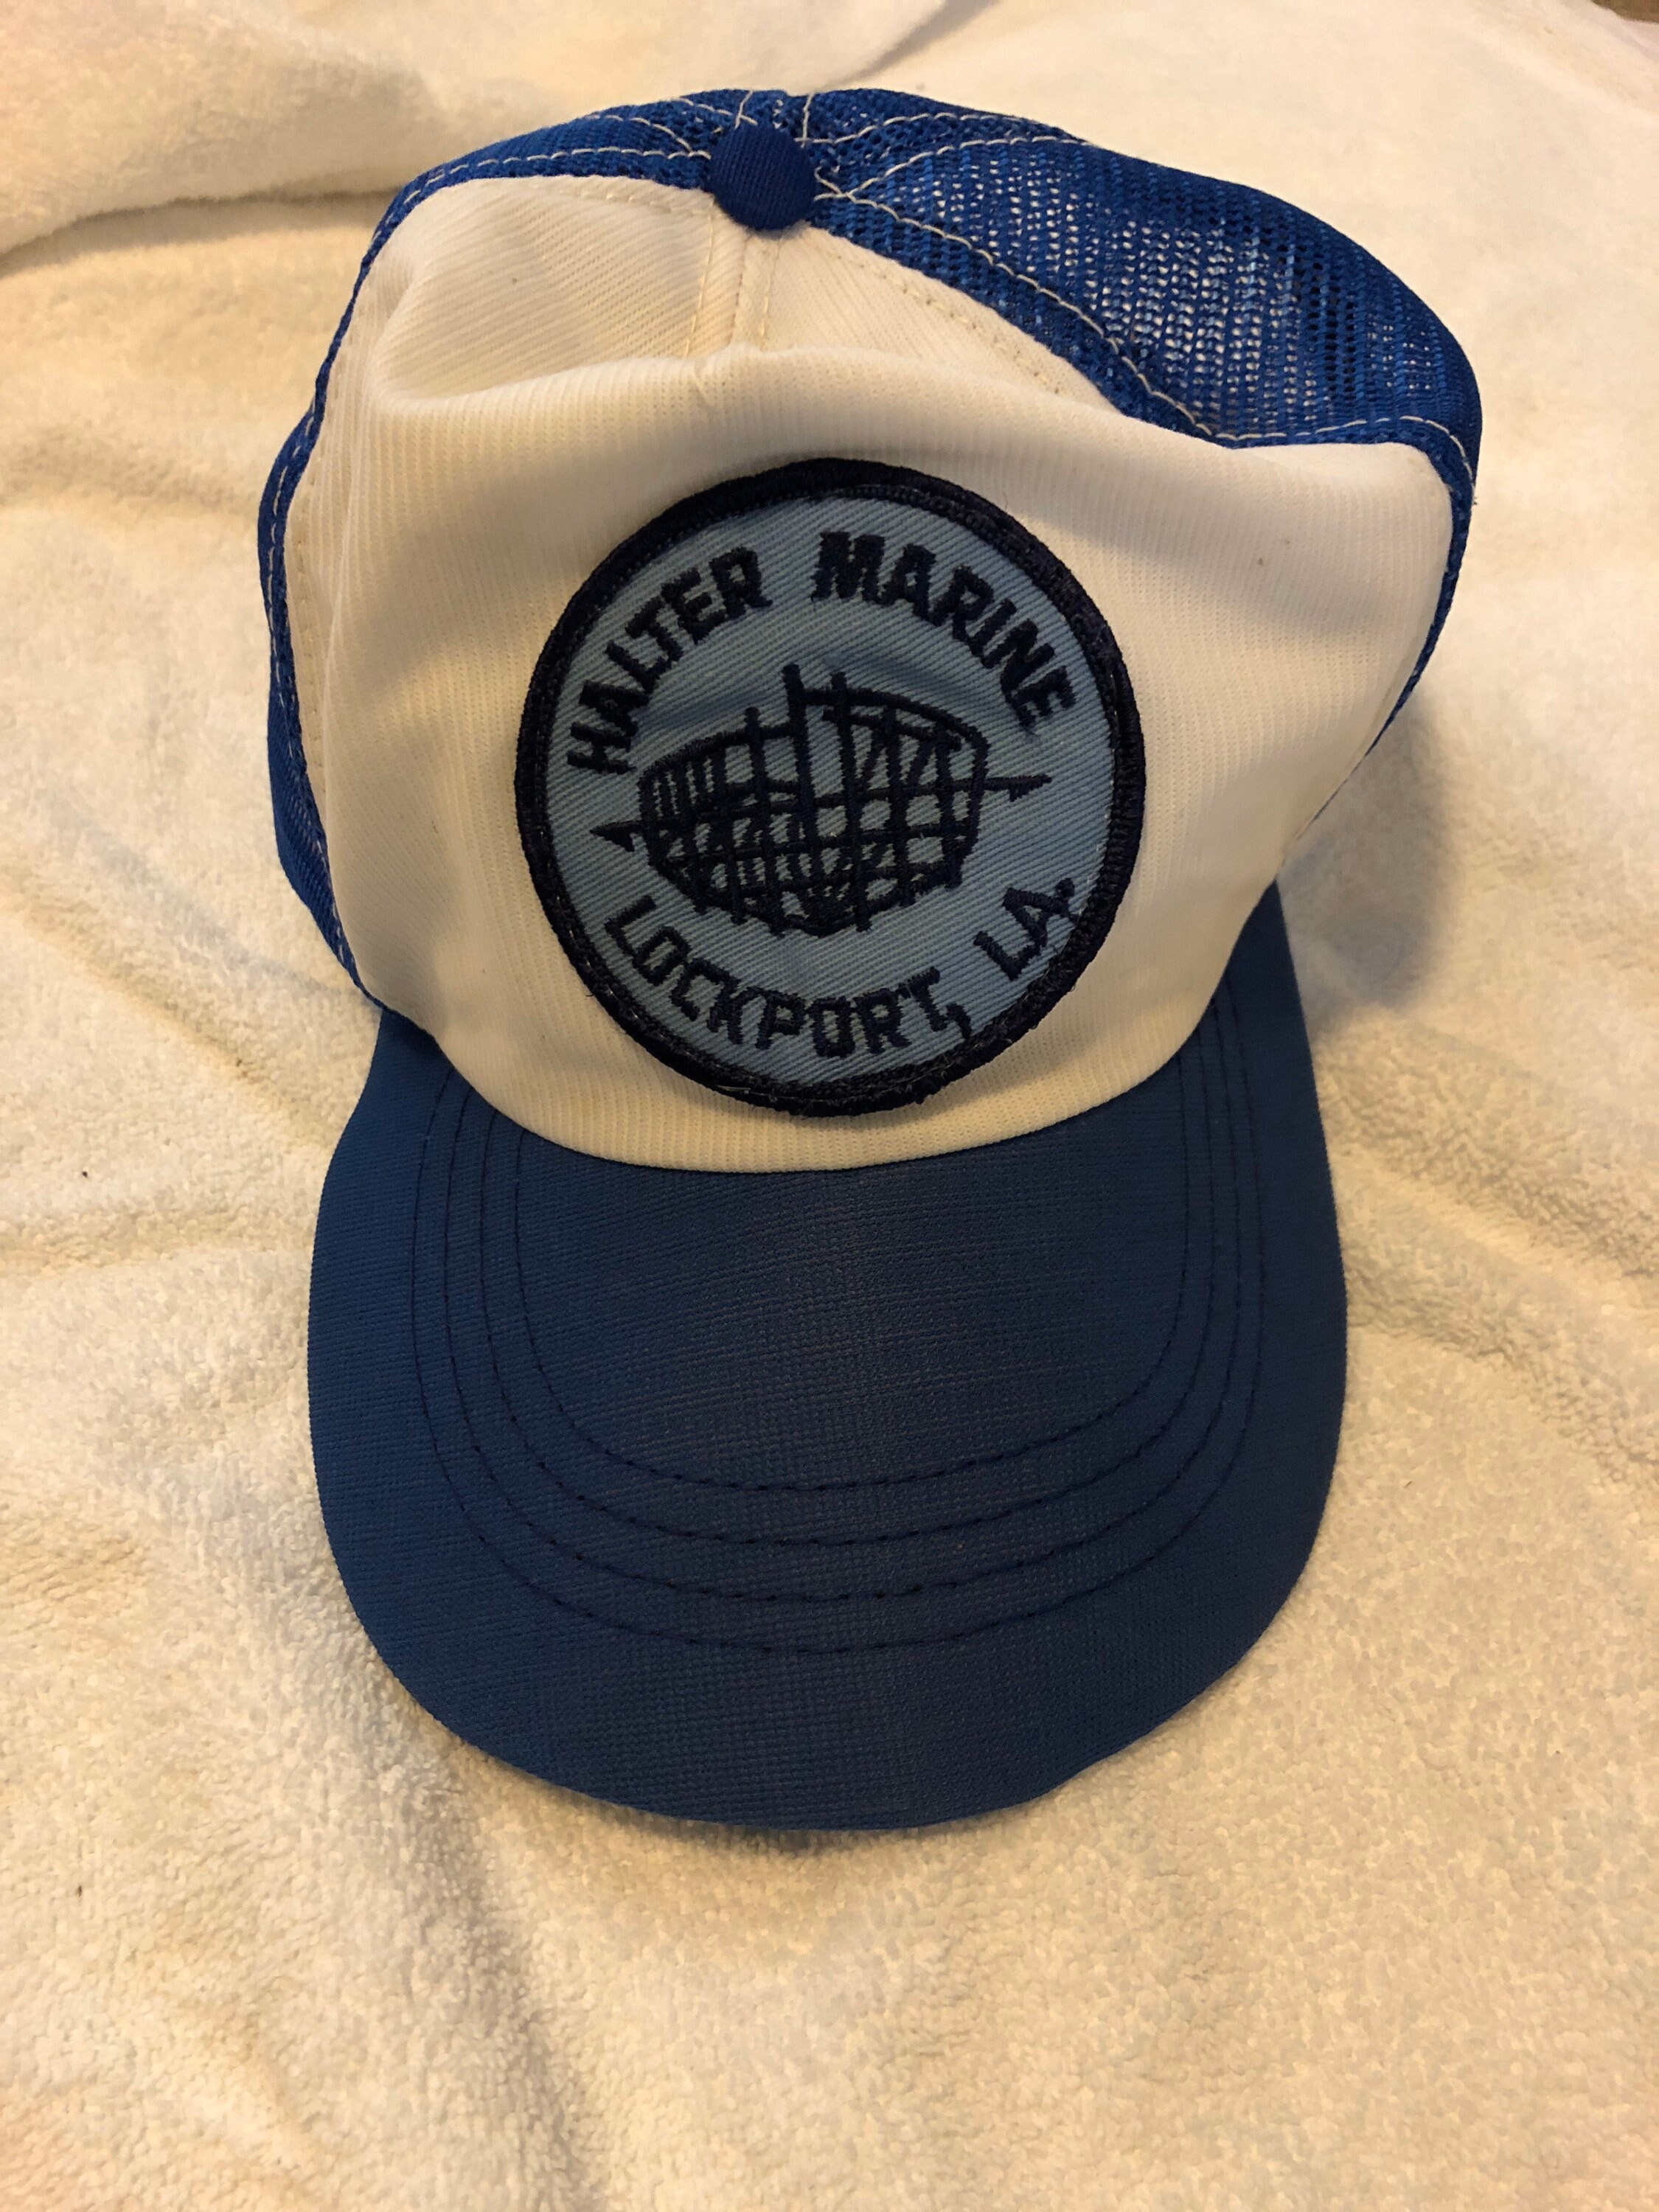 Halter Marine Lockport Louisiana Trucker Hat 